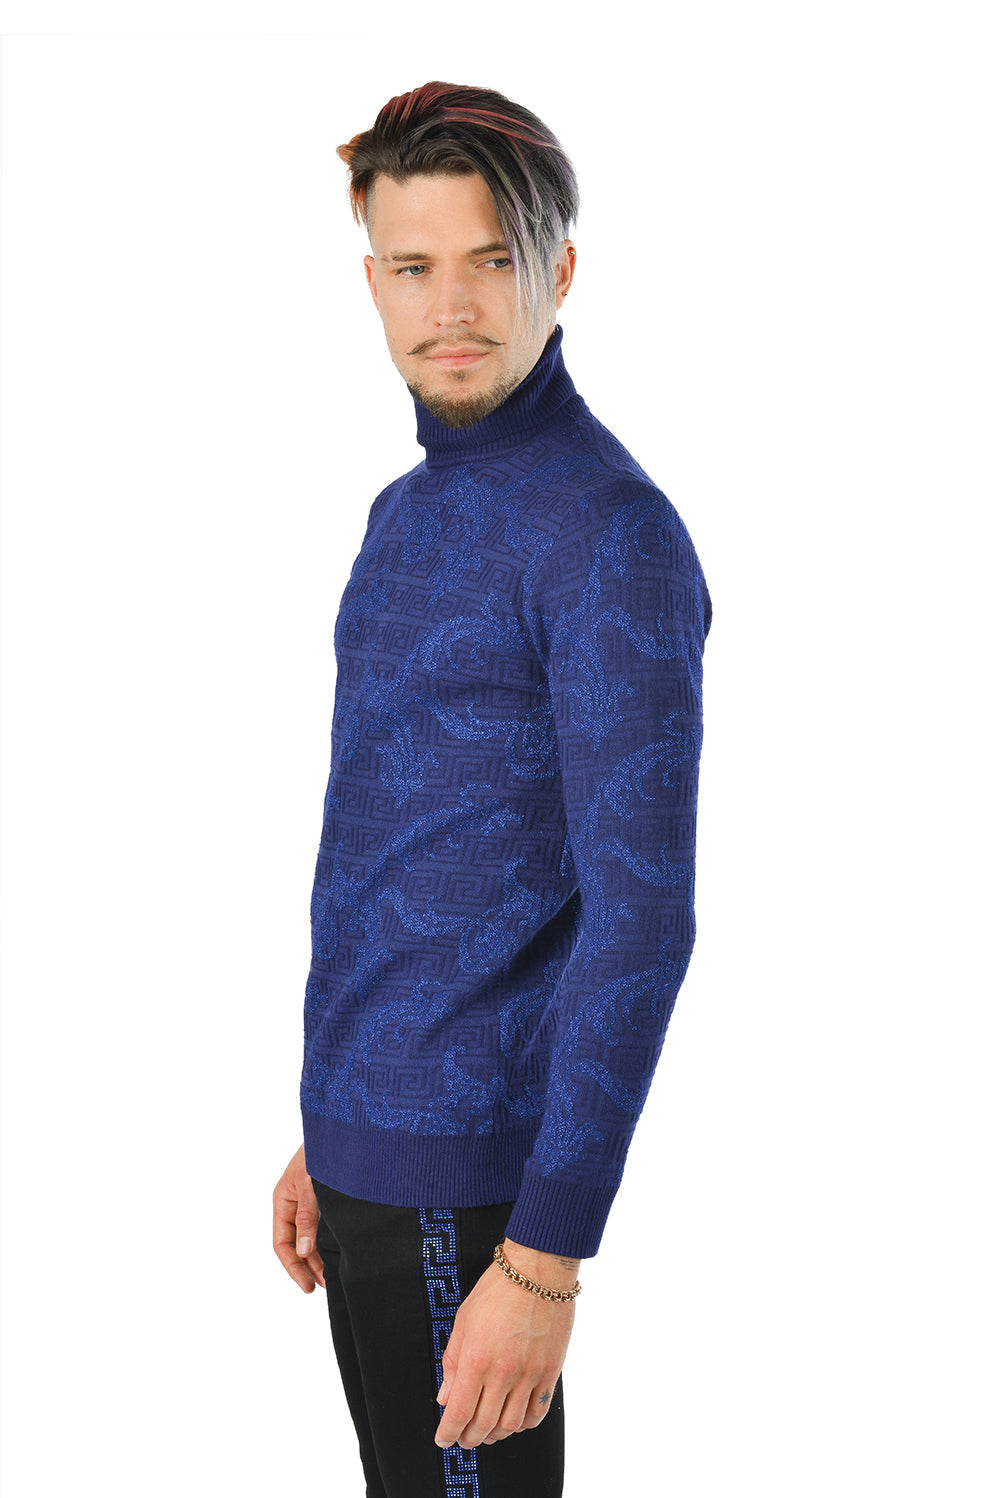 Barabas Men's Floral Print Design Long Sleeve Turtleneck Sweater 2LS2102 Royal